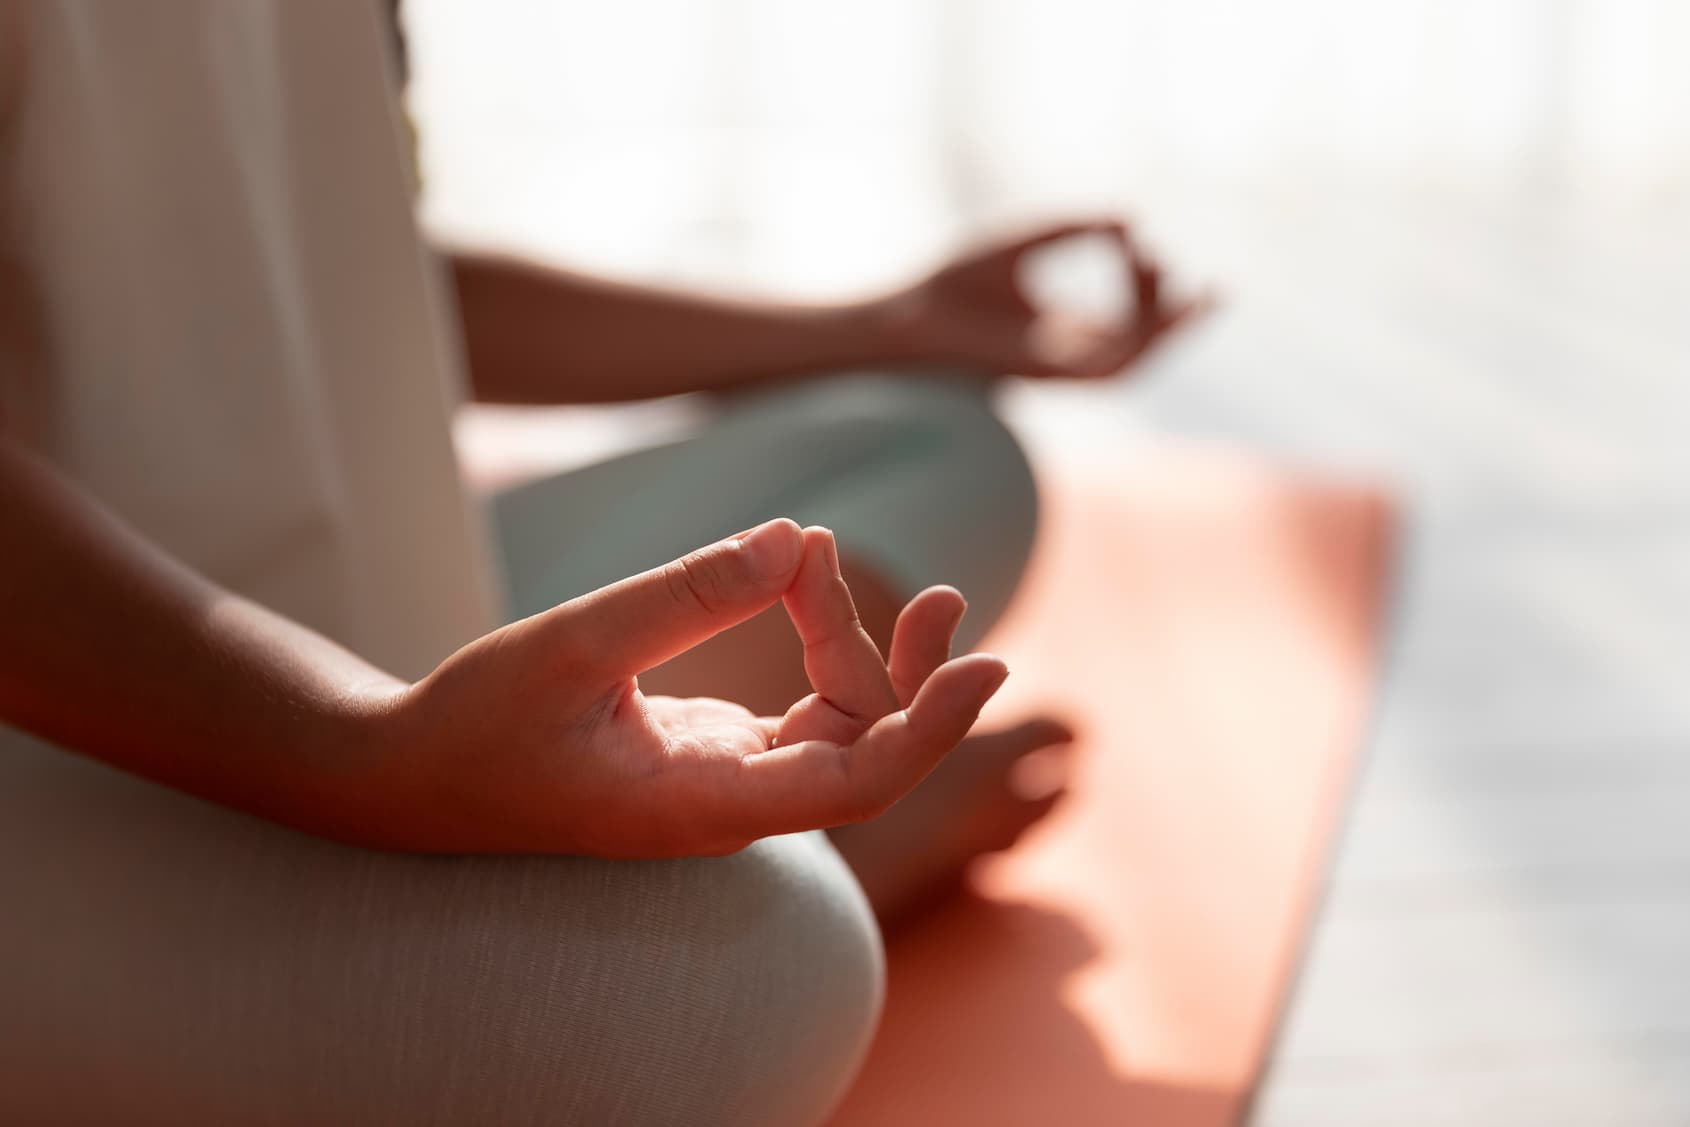 Meditation for mindfulness